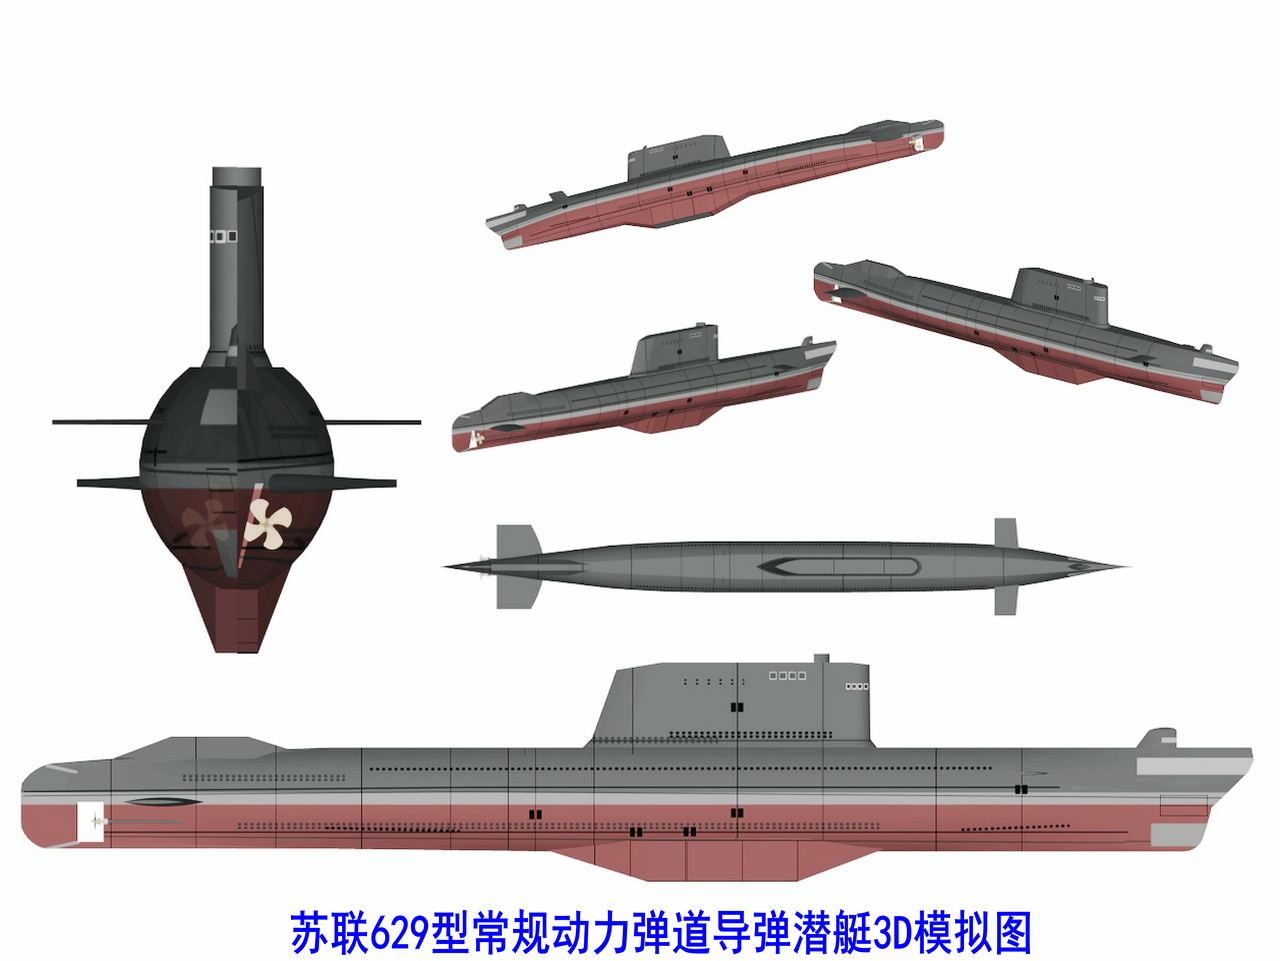 蘇聯629型常規彈道飛彈潛艇3D圖